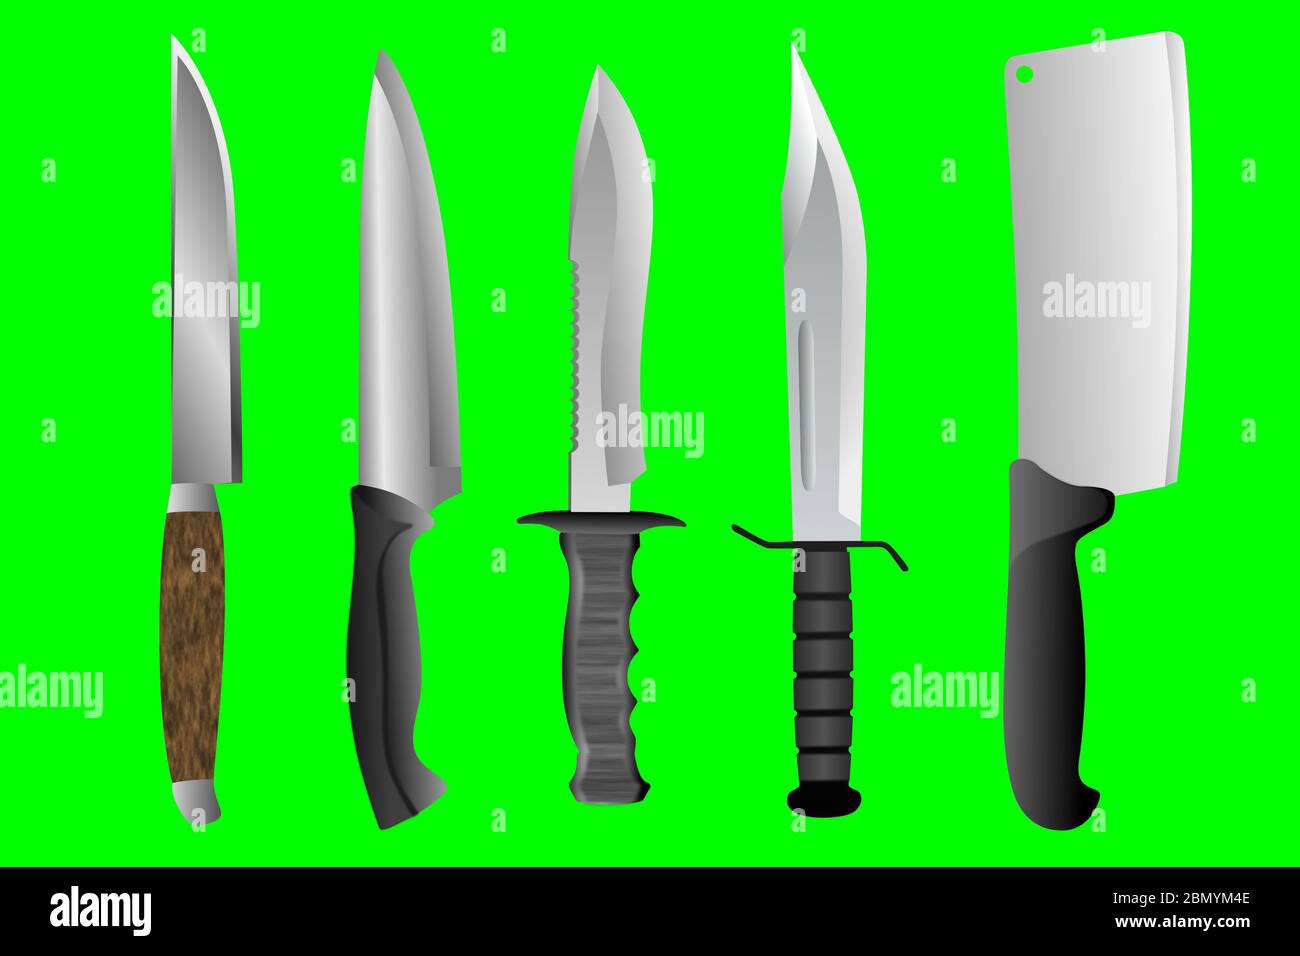 Hình ảnh năm loại dao khác nhau trên nền xanh Chroma Key sẽ khiến bạn bật mí về các sản phẩm dao chất lượng nhất hiện nay. Với độ chính xác và tính hiệu quả cao, các dao này sẽ giúp bạn hoàn thành công việc một cách dễ dàng và nhanh chóng.